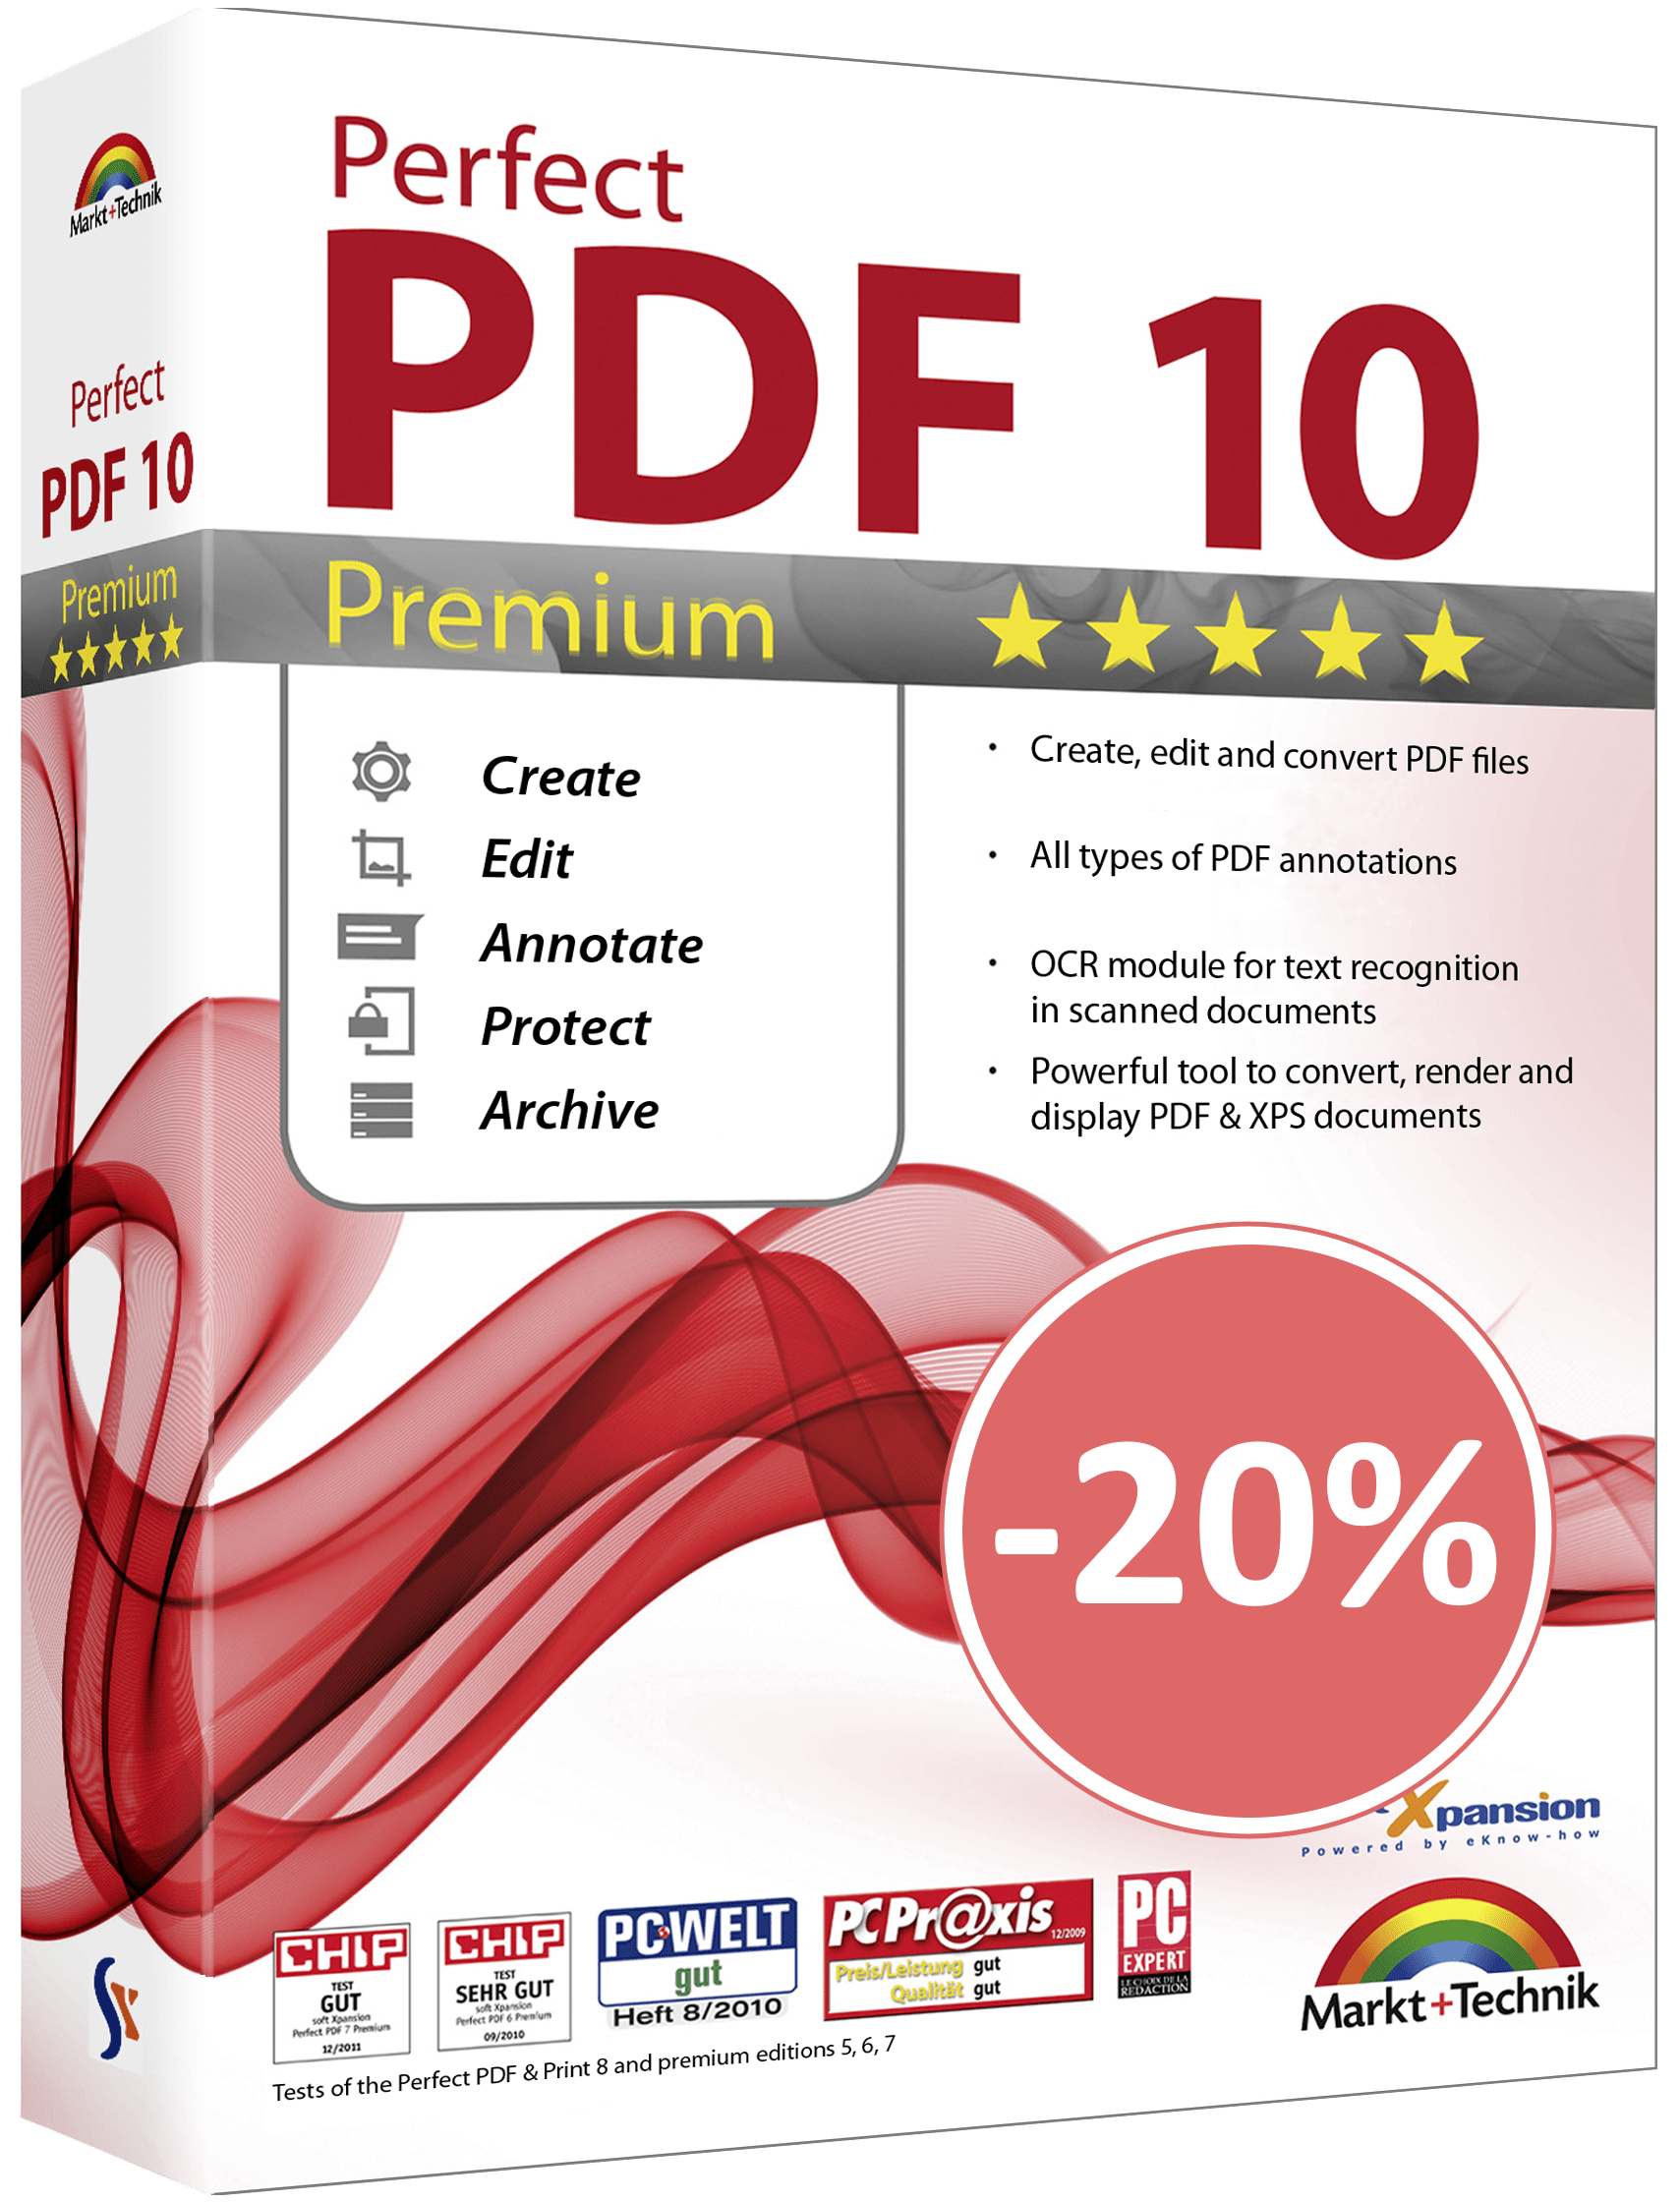 Perfect PDF10 Premium